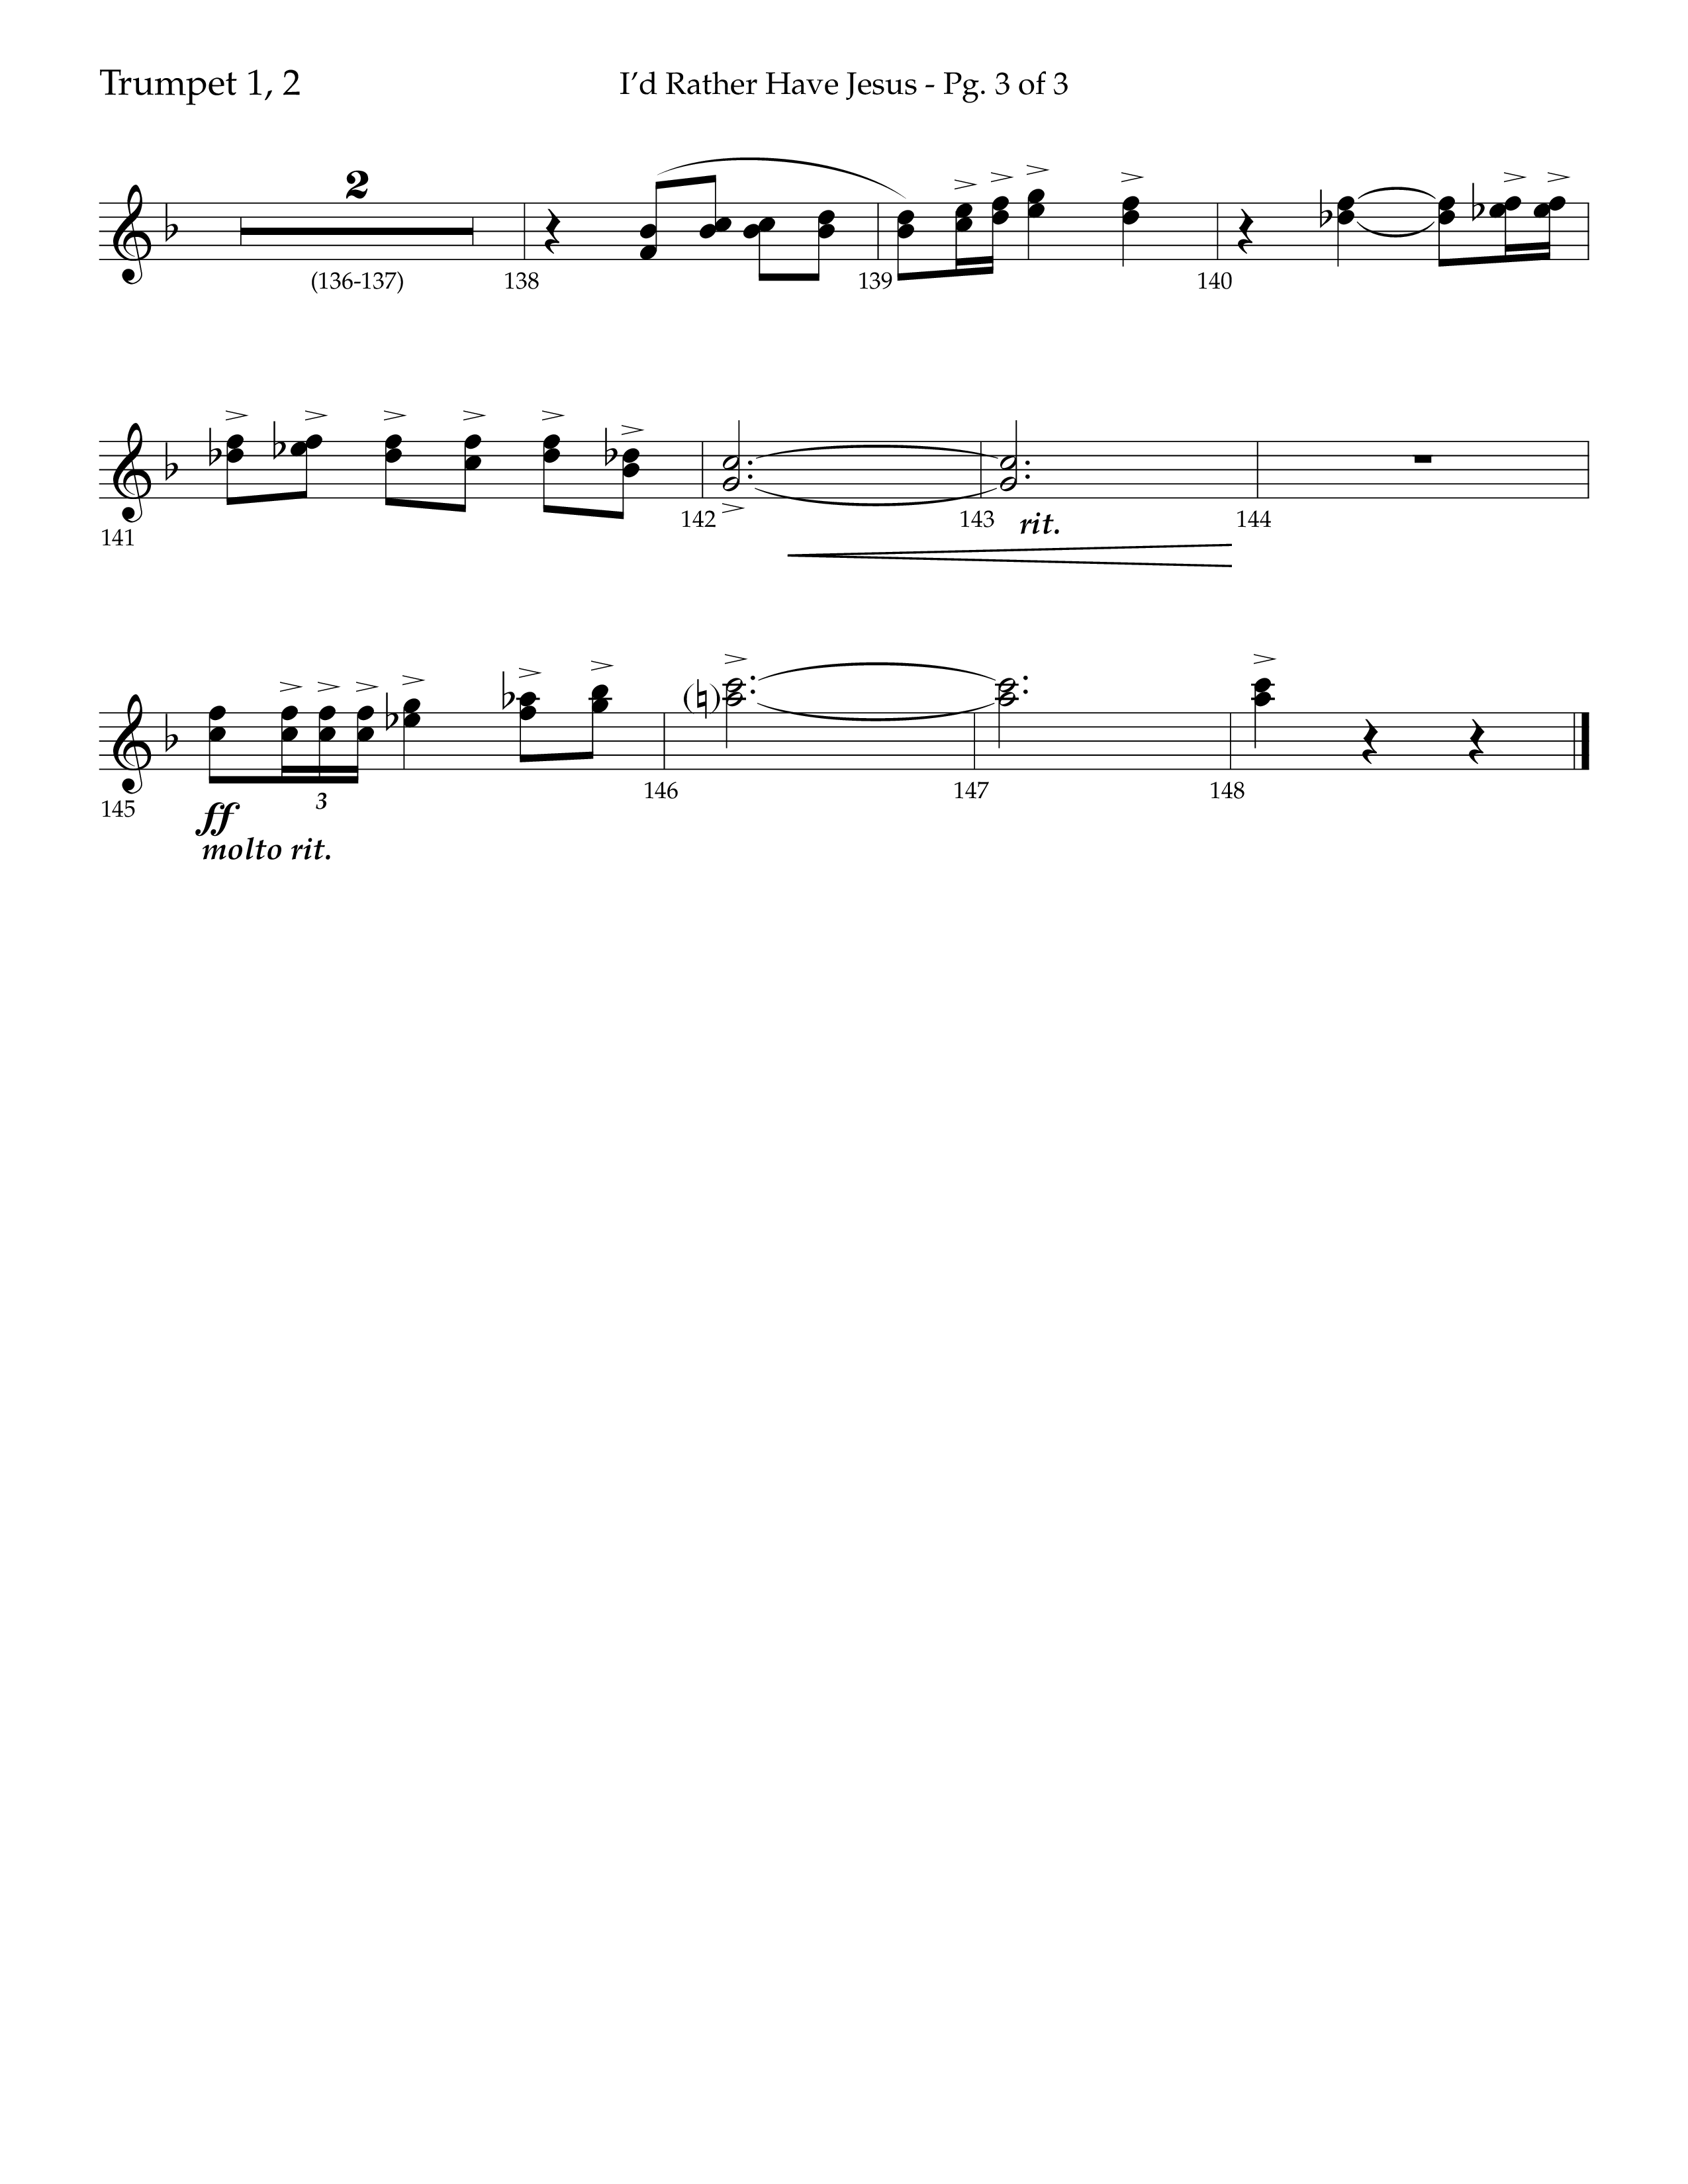 I'd Rather Have Jesus (Choral Anthem SATB) Trumpet 1,2 (Lifeway Choral / Arr. Richard Kingsmore)